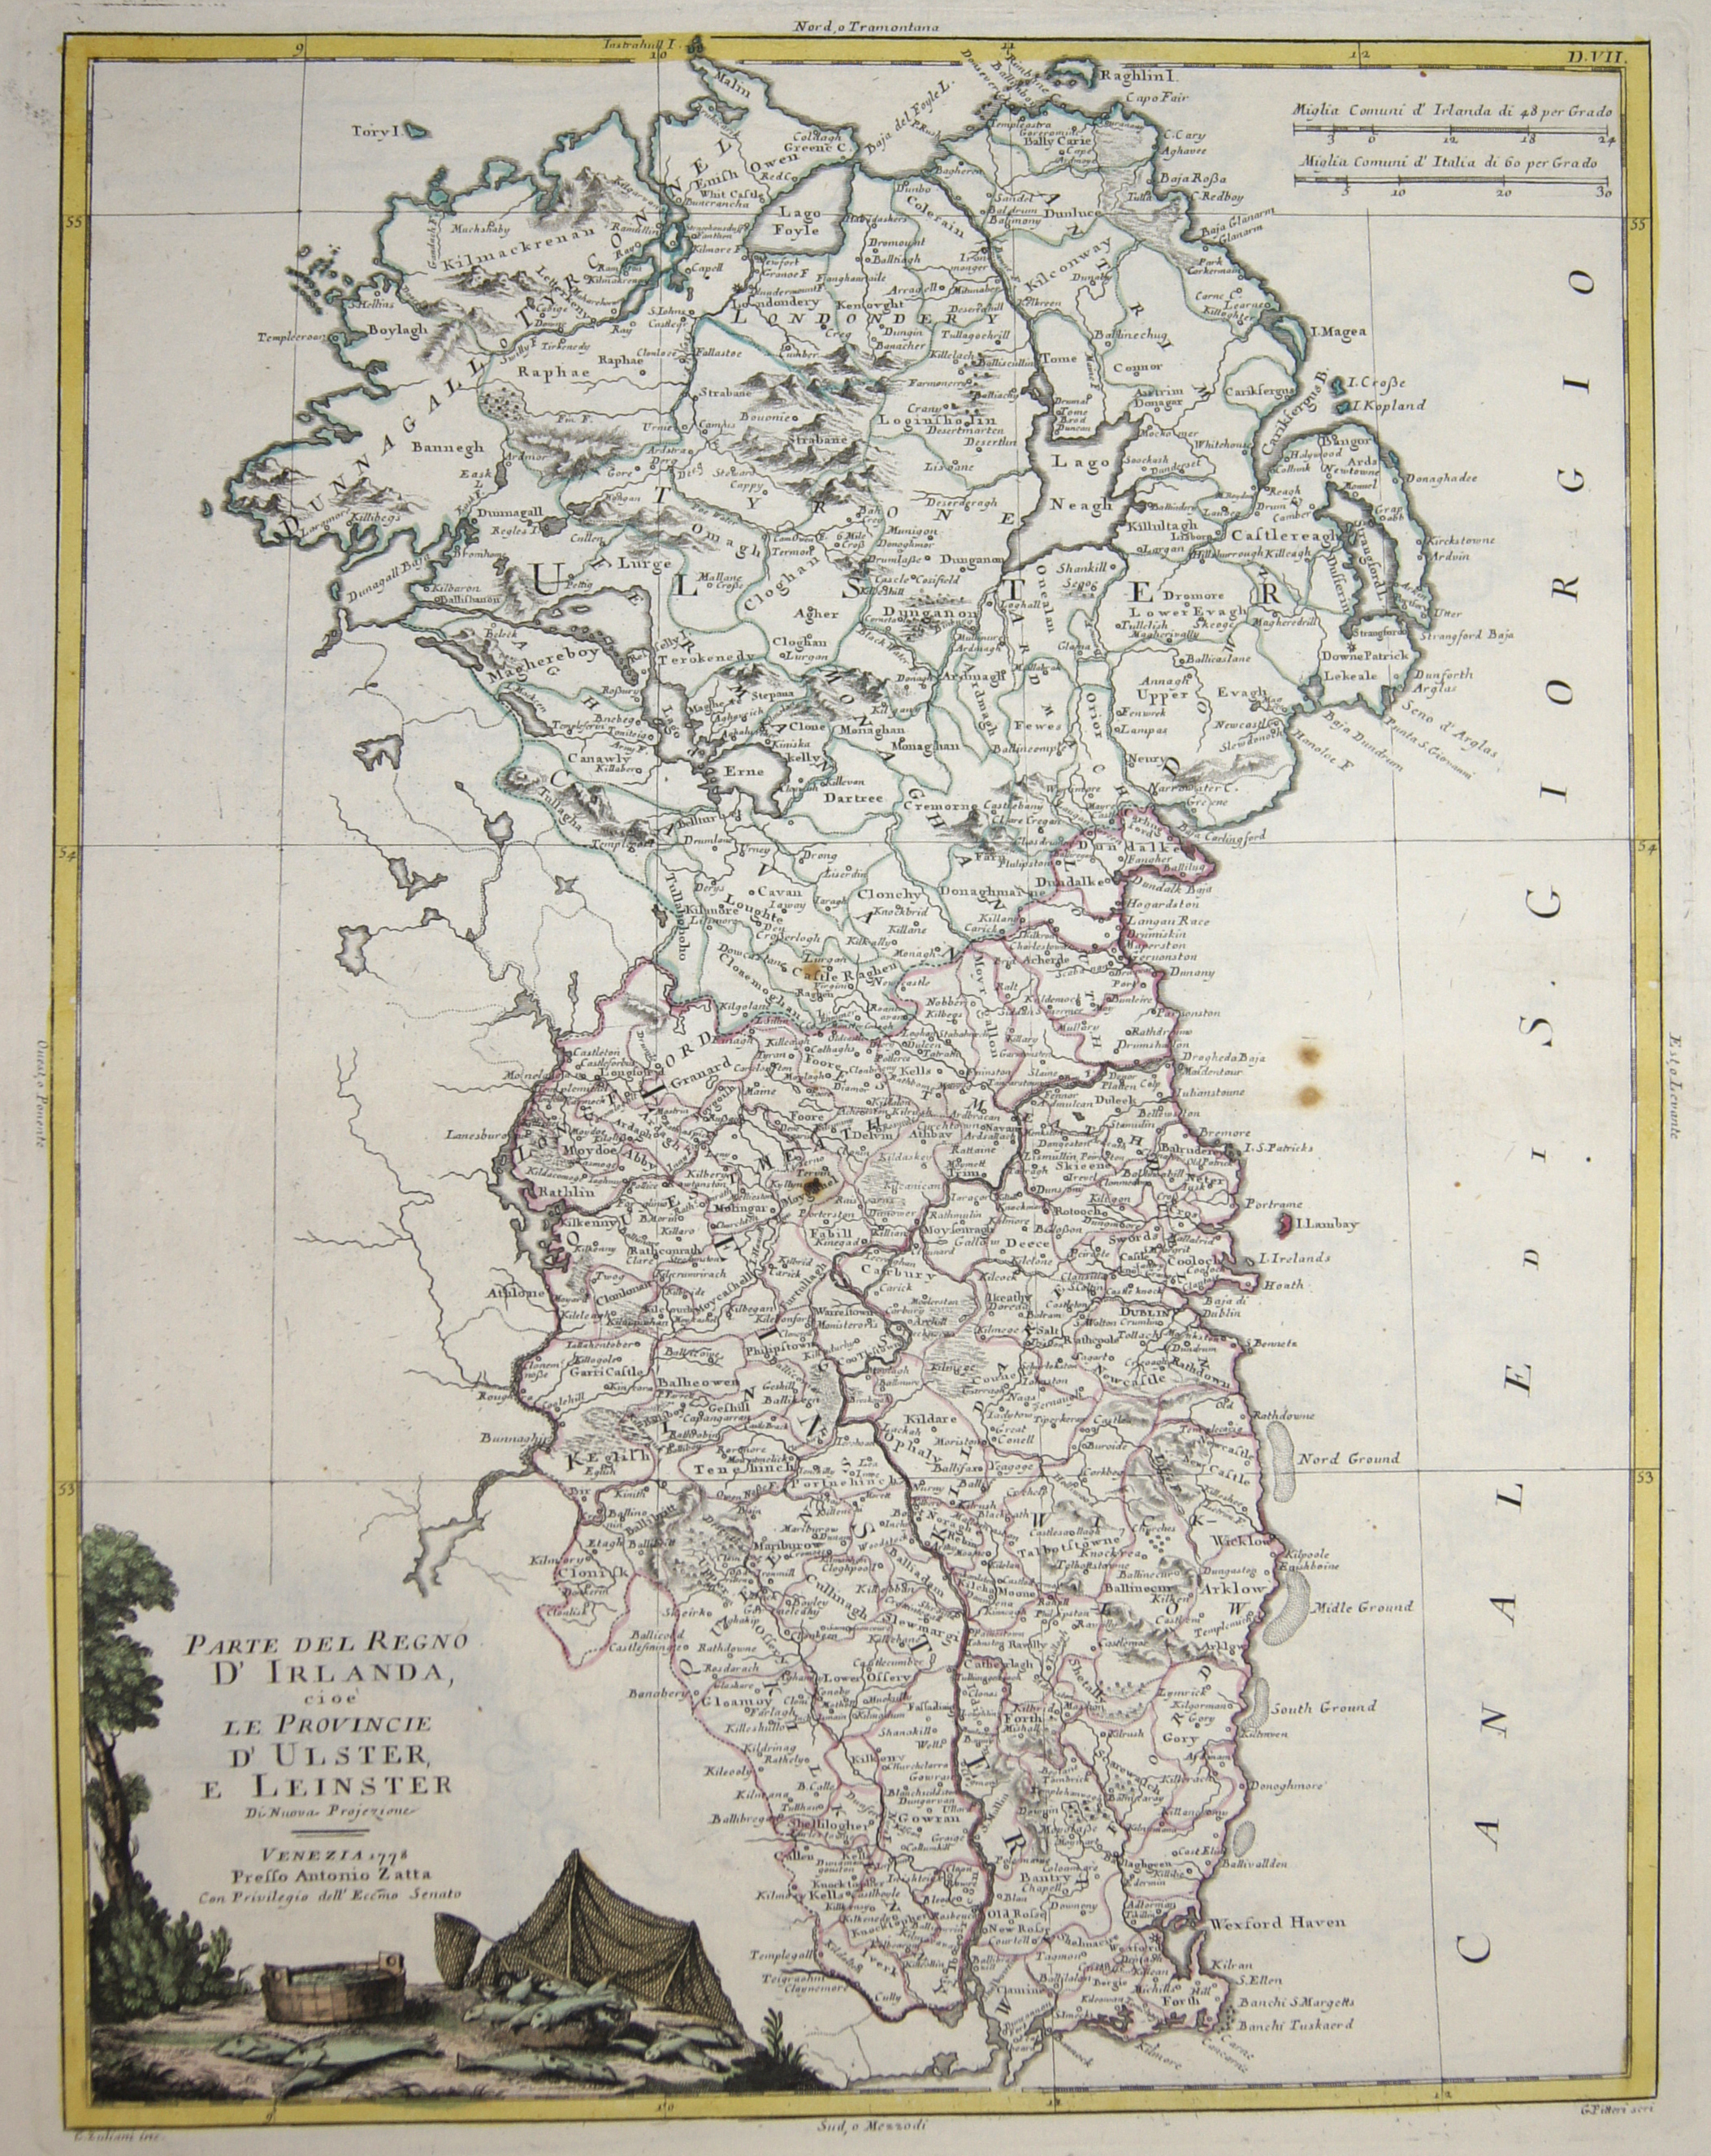 Zatta  Parte del Regno d’Irlanda, cioè le Provincie d’ Ulster, e Leinster